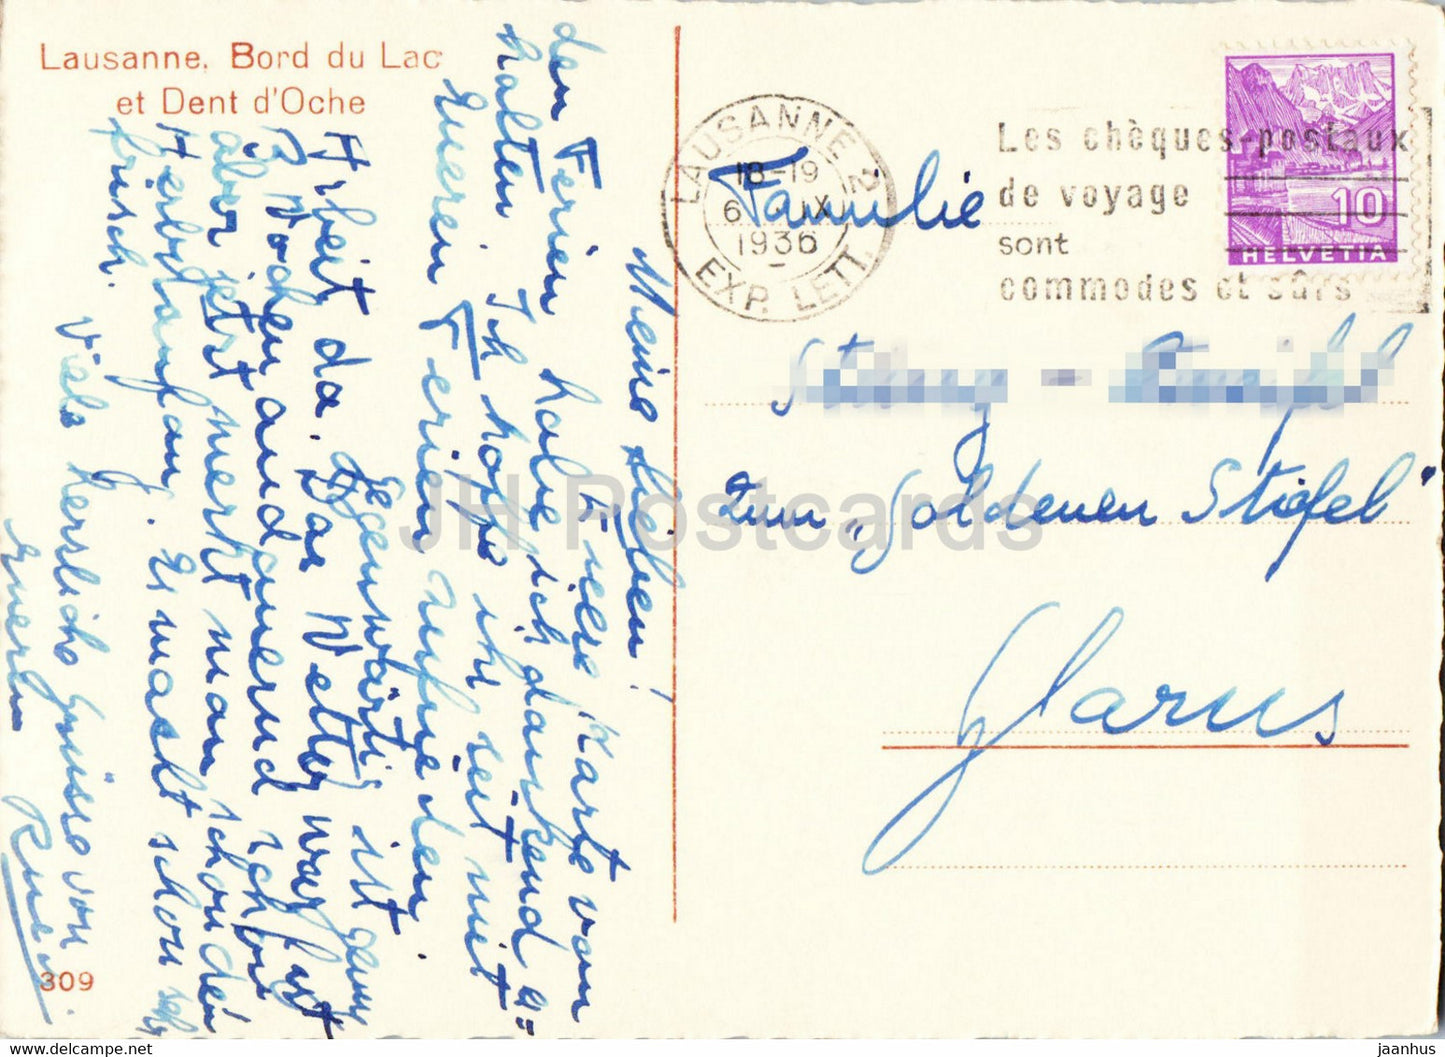 Lausanne - Bord du Lac et Dent d' Oche - 309 - old postcard - 1936 - Switzerland - used